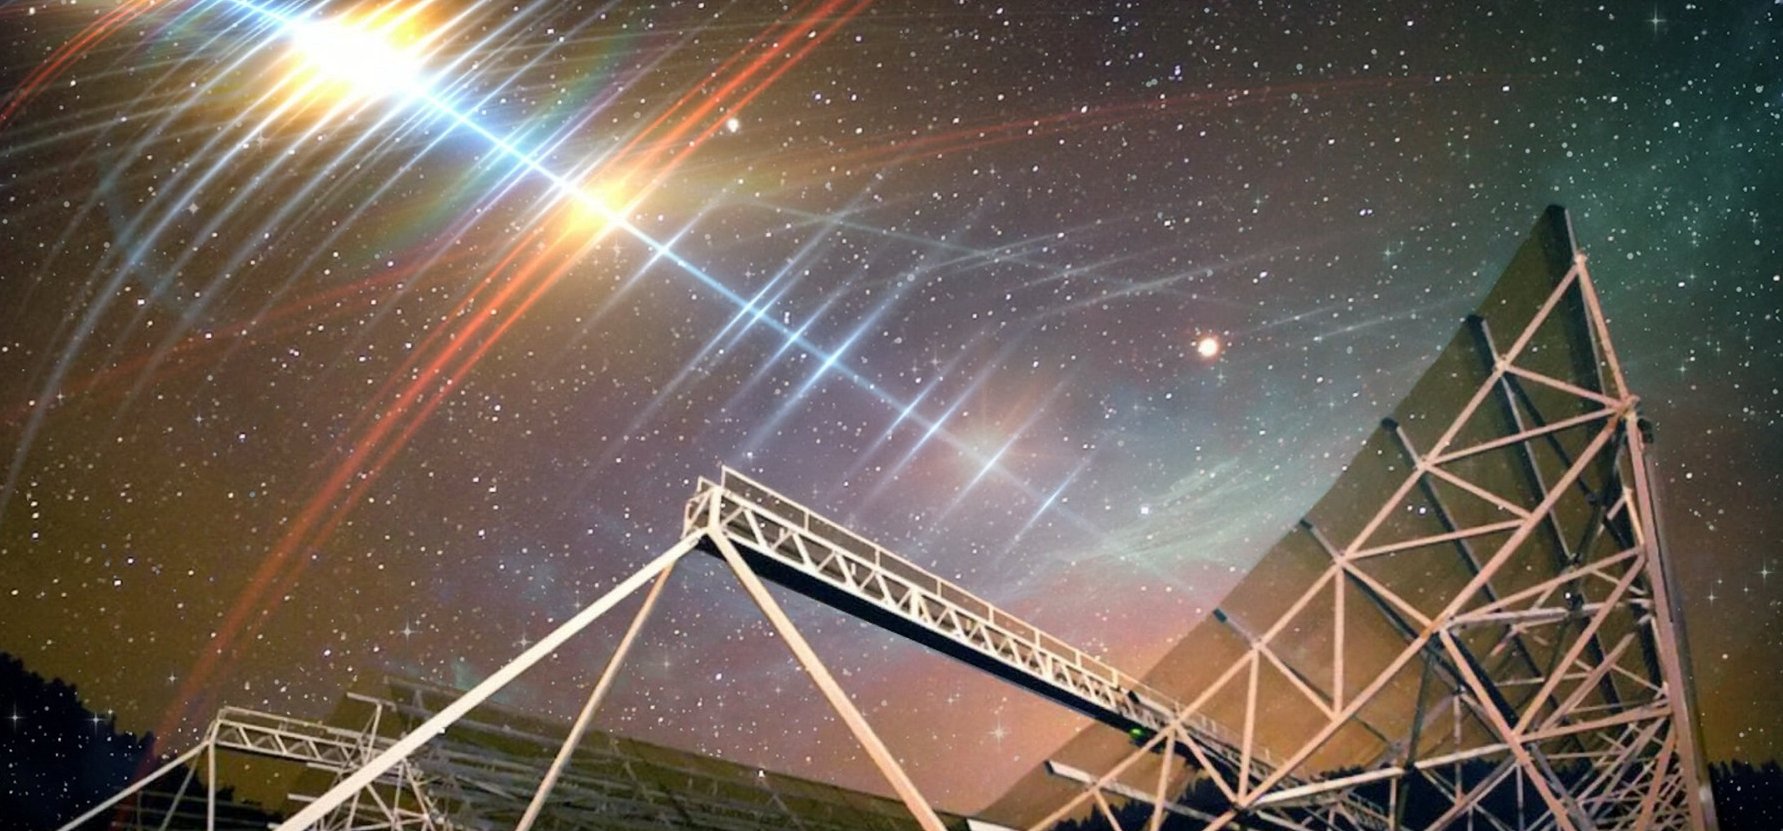 Ismétlődő rádiójeleket észleltek a világűrben – közeleg a szenzációs bejelentés?